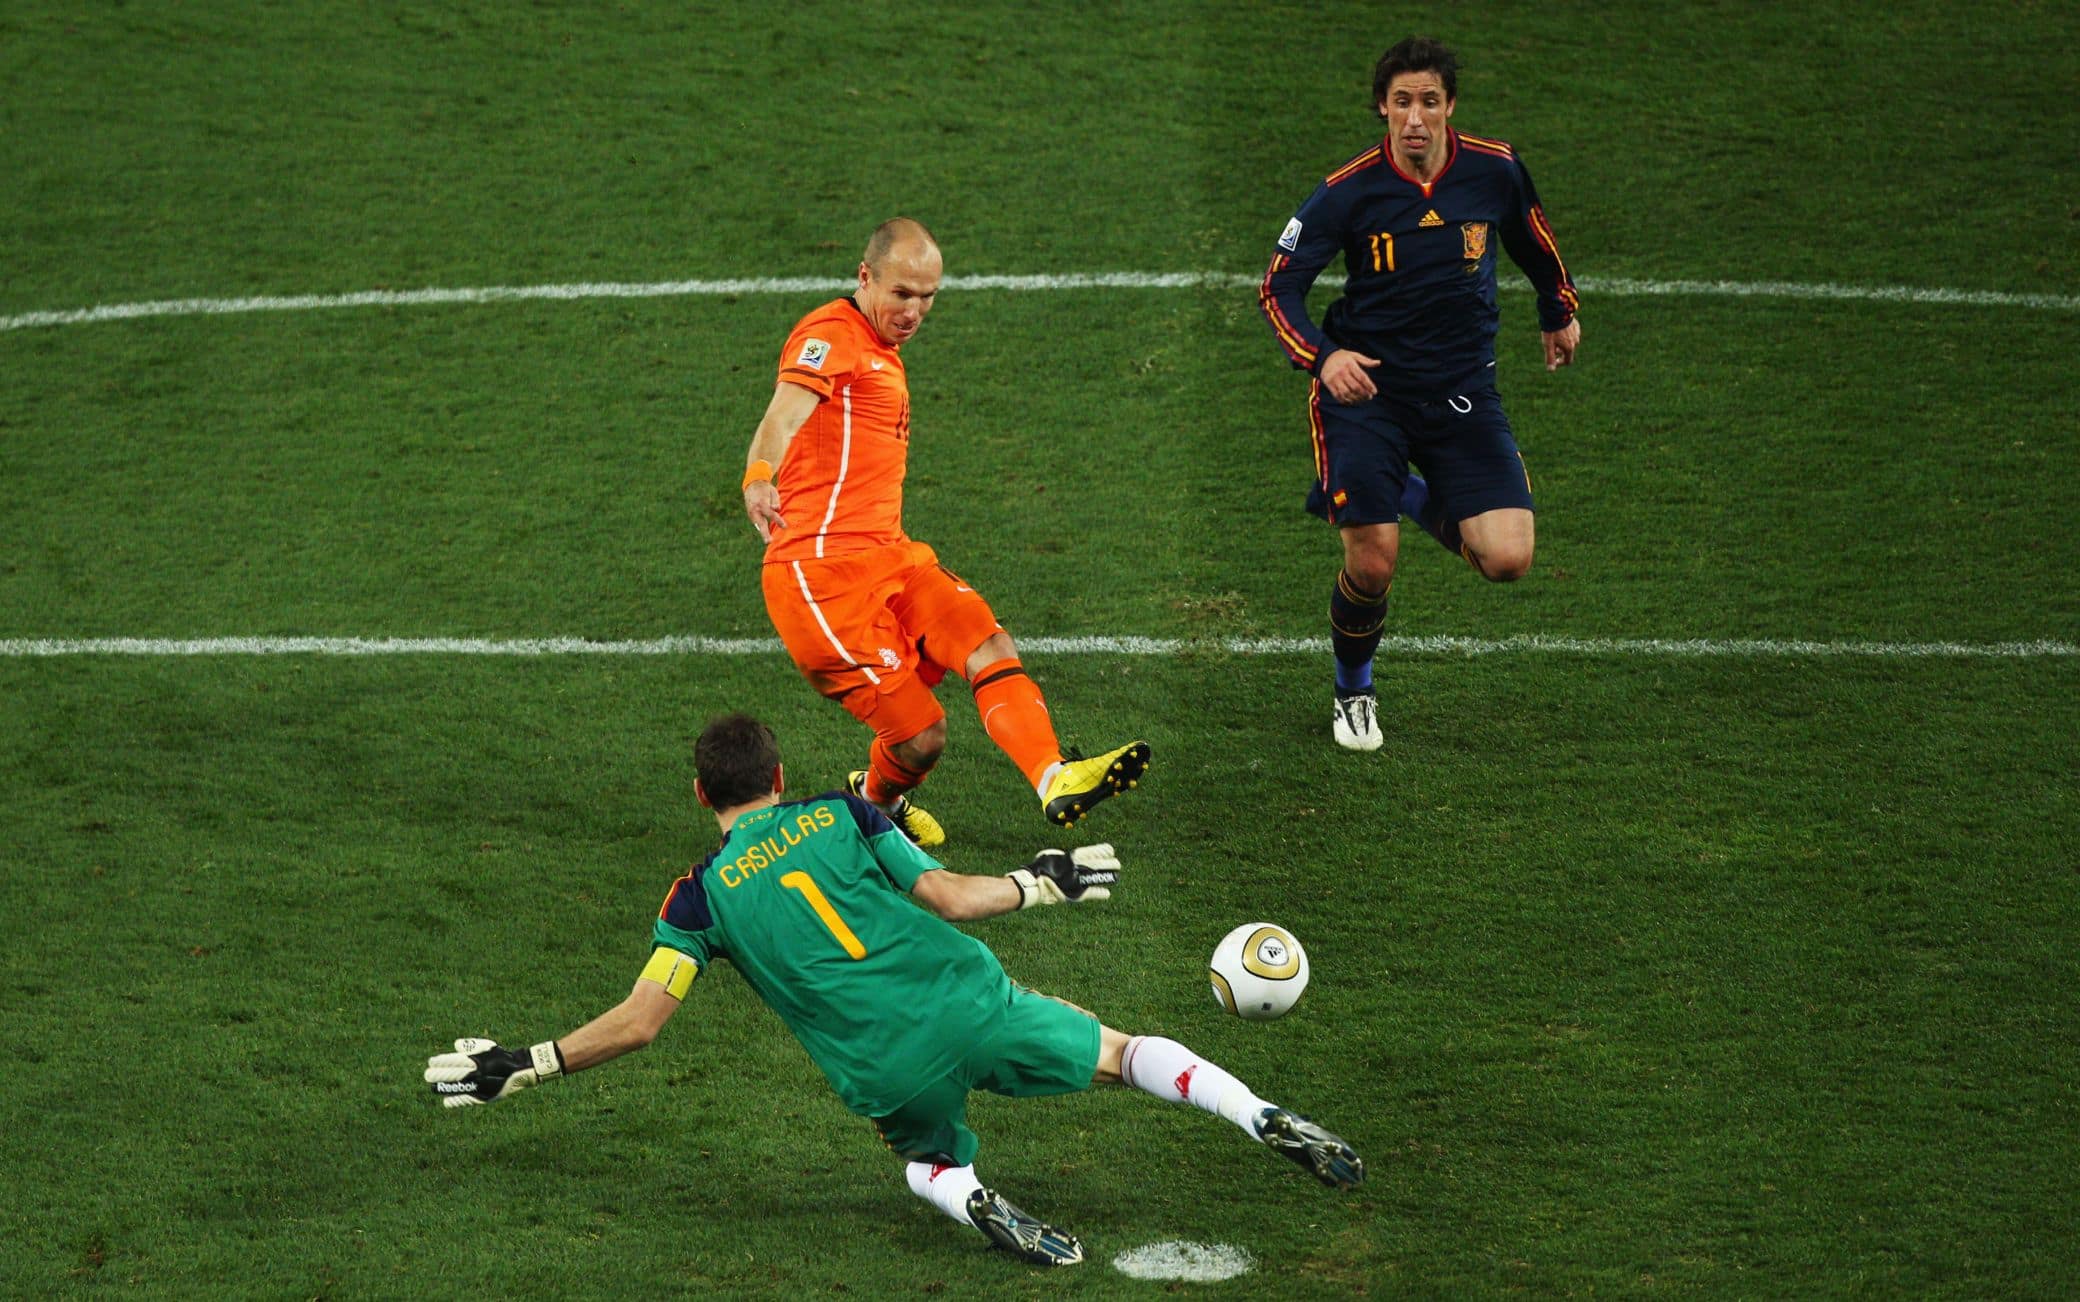 Finale dei Mondiali 2010: l'errore di Robben che avrebbe potuto dare la coppa all'Olanda. Guardate dietro: c'è Capdevila pronto a urlare la "maledizione" Kiricocho